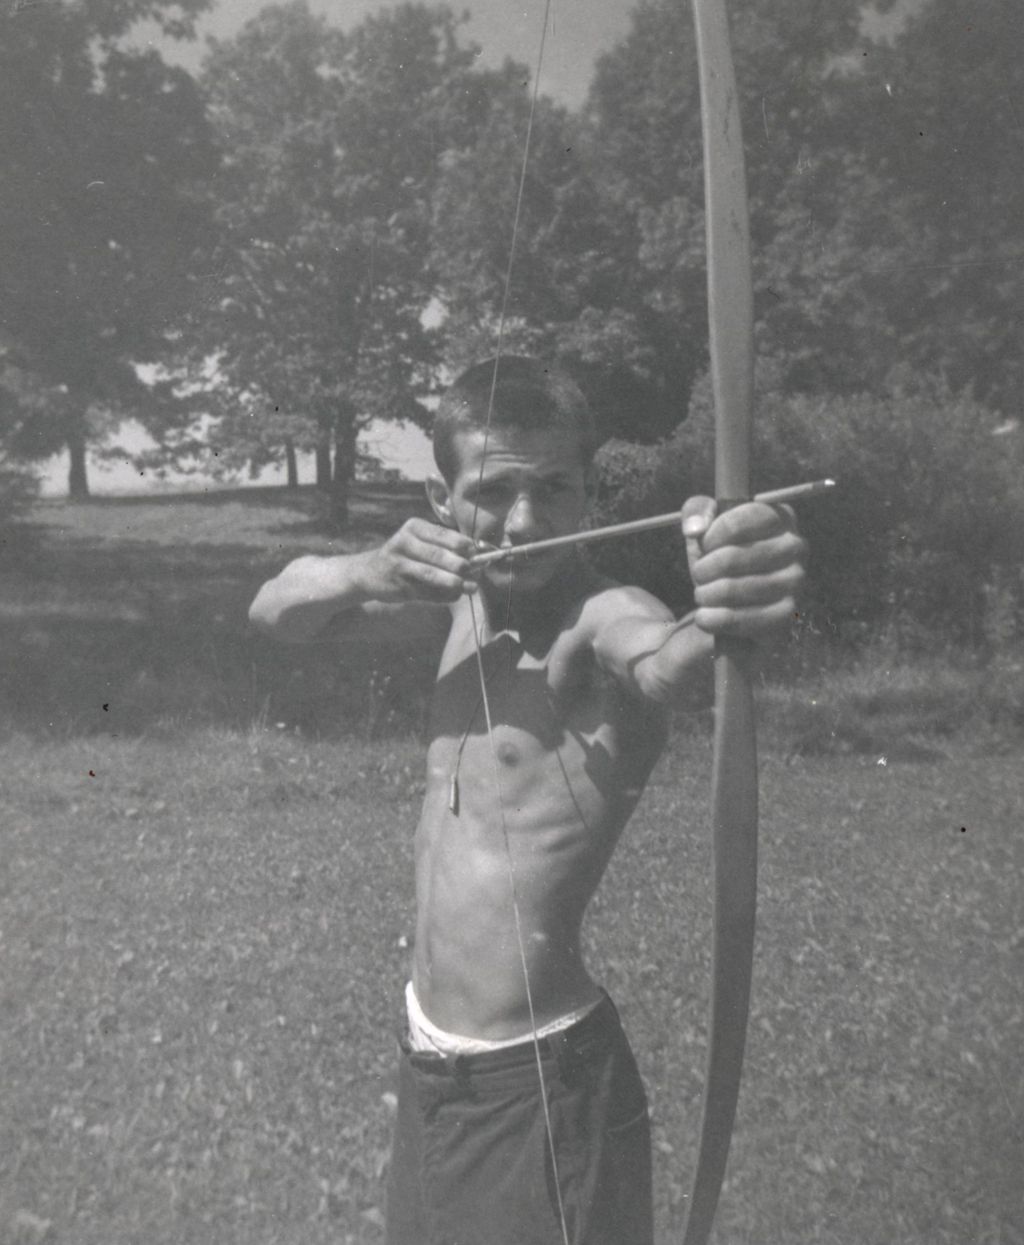 Miniature of Jimmy Tarsitano shooting bow and arrow